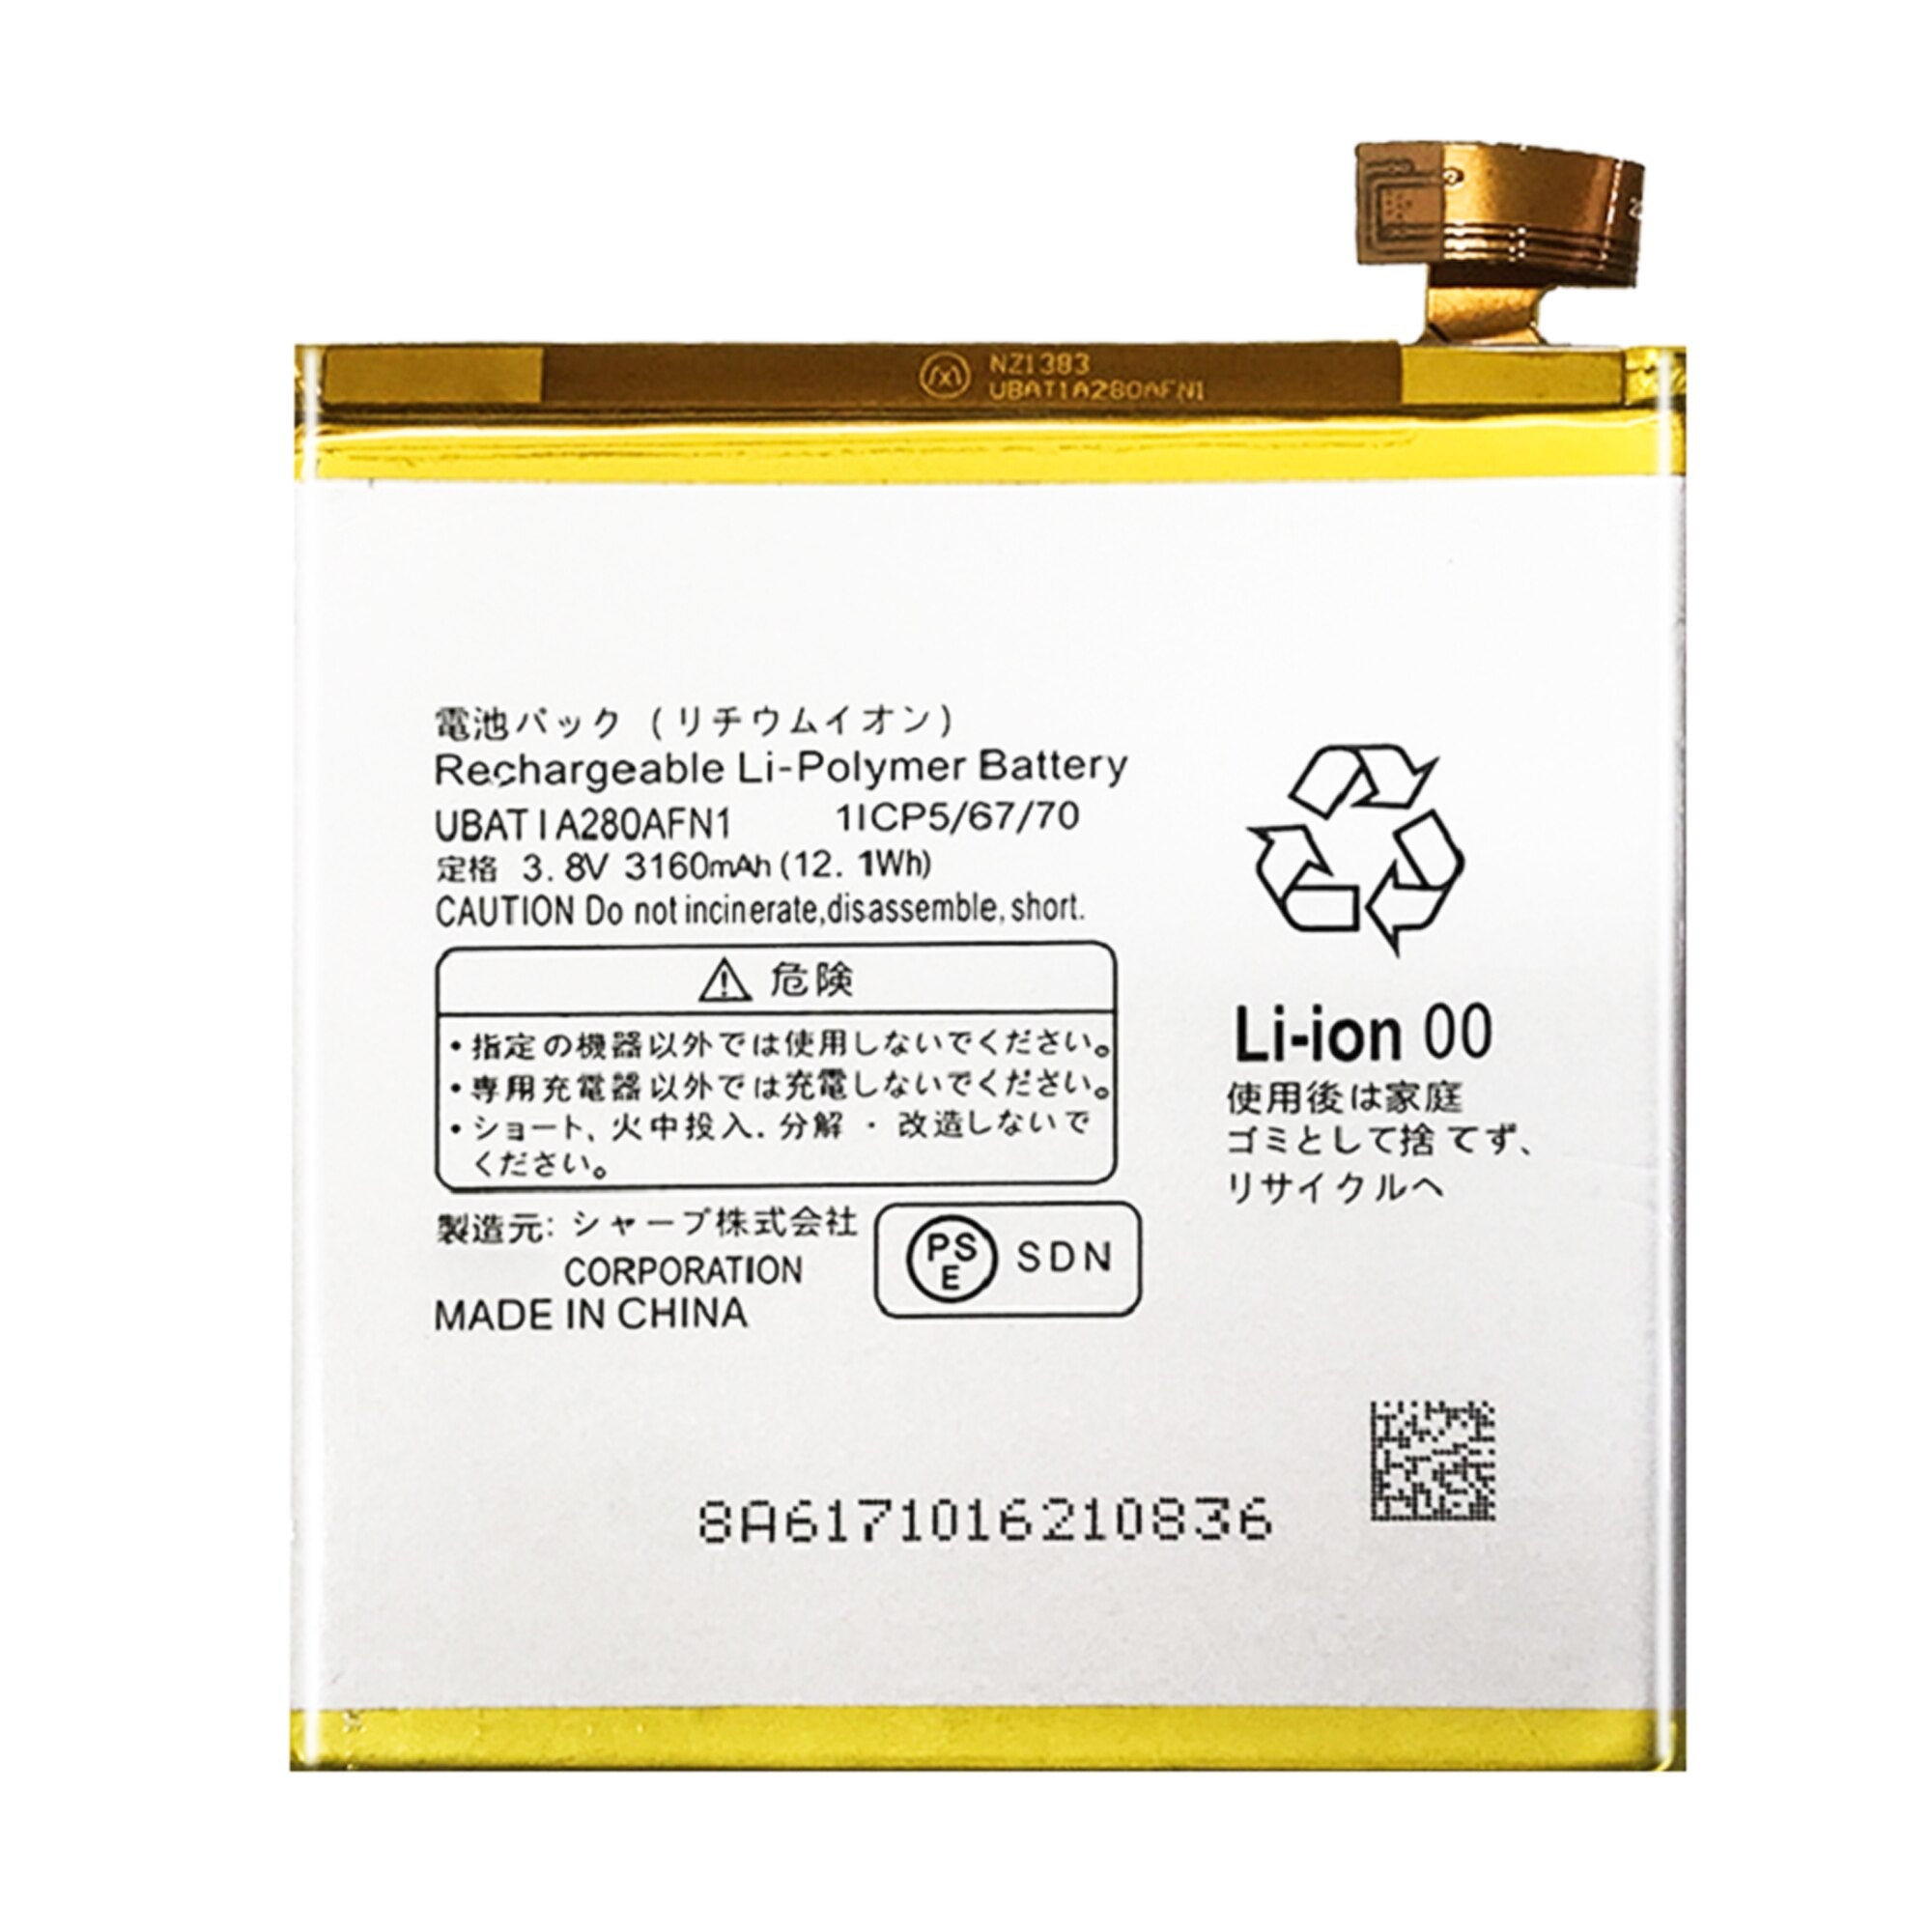 UBATIA280AFN1 Battery For Sharp Aquos R / SH-03J / SHV39 / 605SH Repair Part Original Capacity Mobile Phone Batteries Bateria